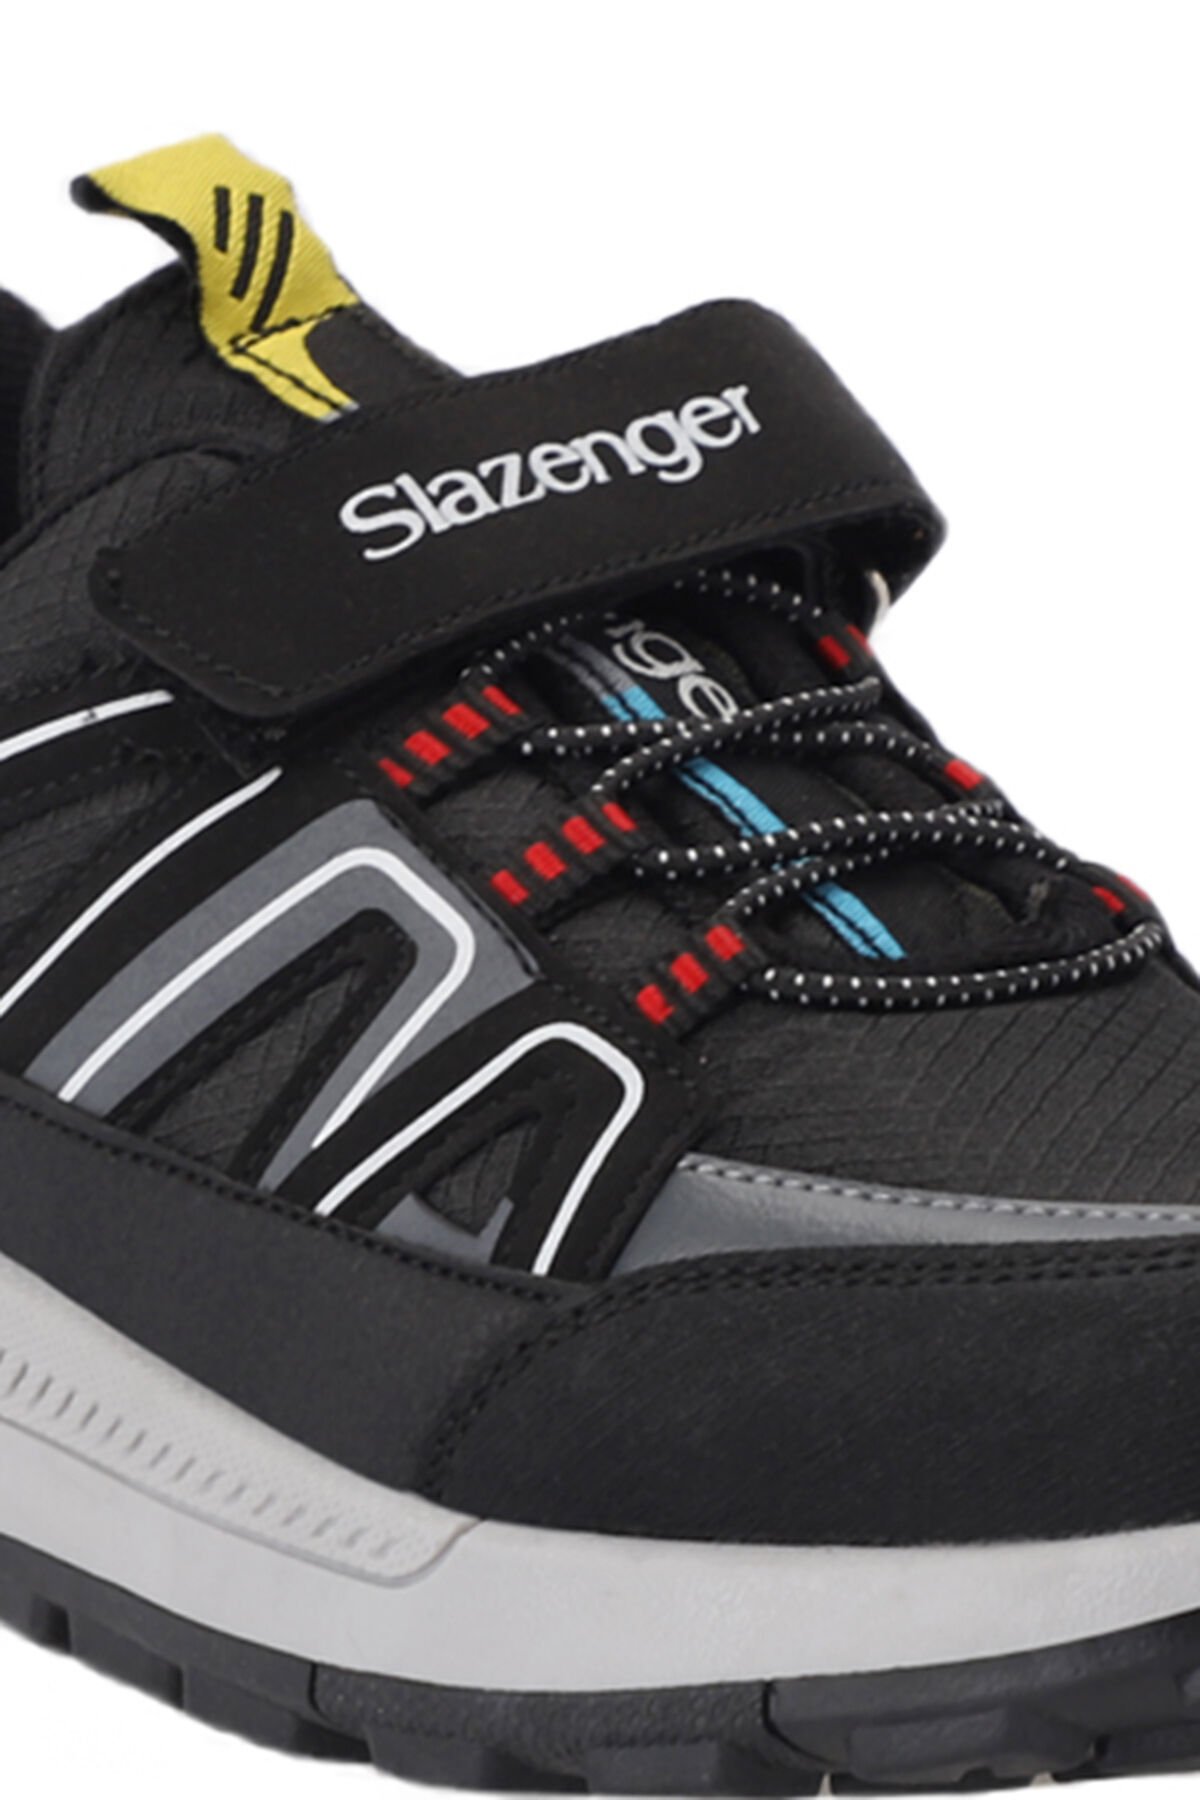 Slazenger KROSS KTN Sneaker Unisex Çocuk Ayakkabı Siyah / Beyaz - Thumbnail